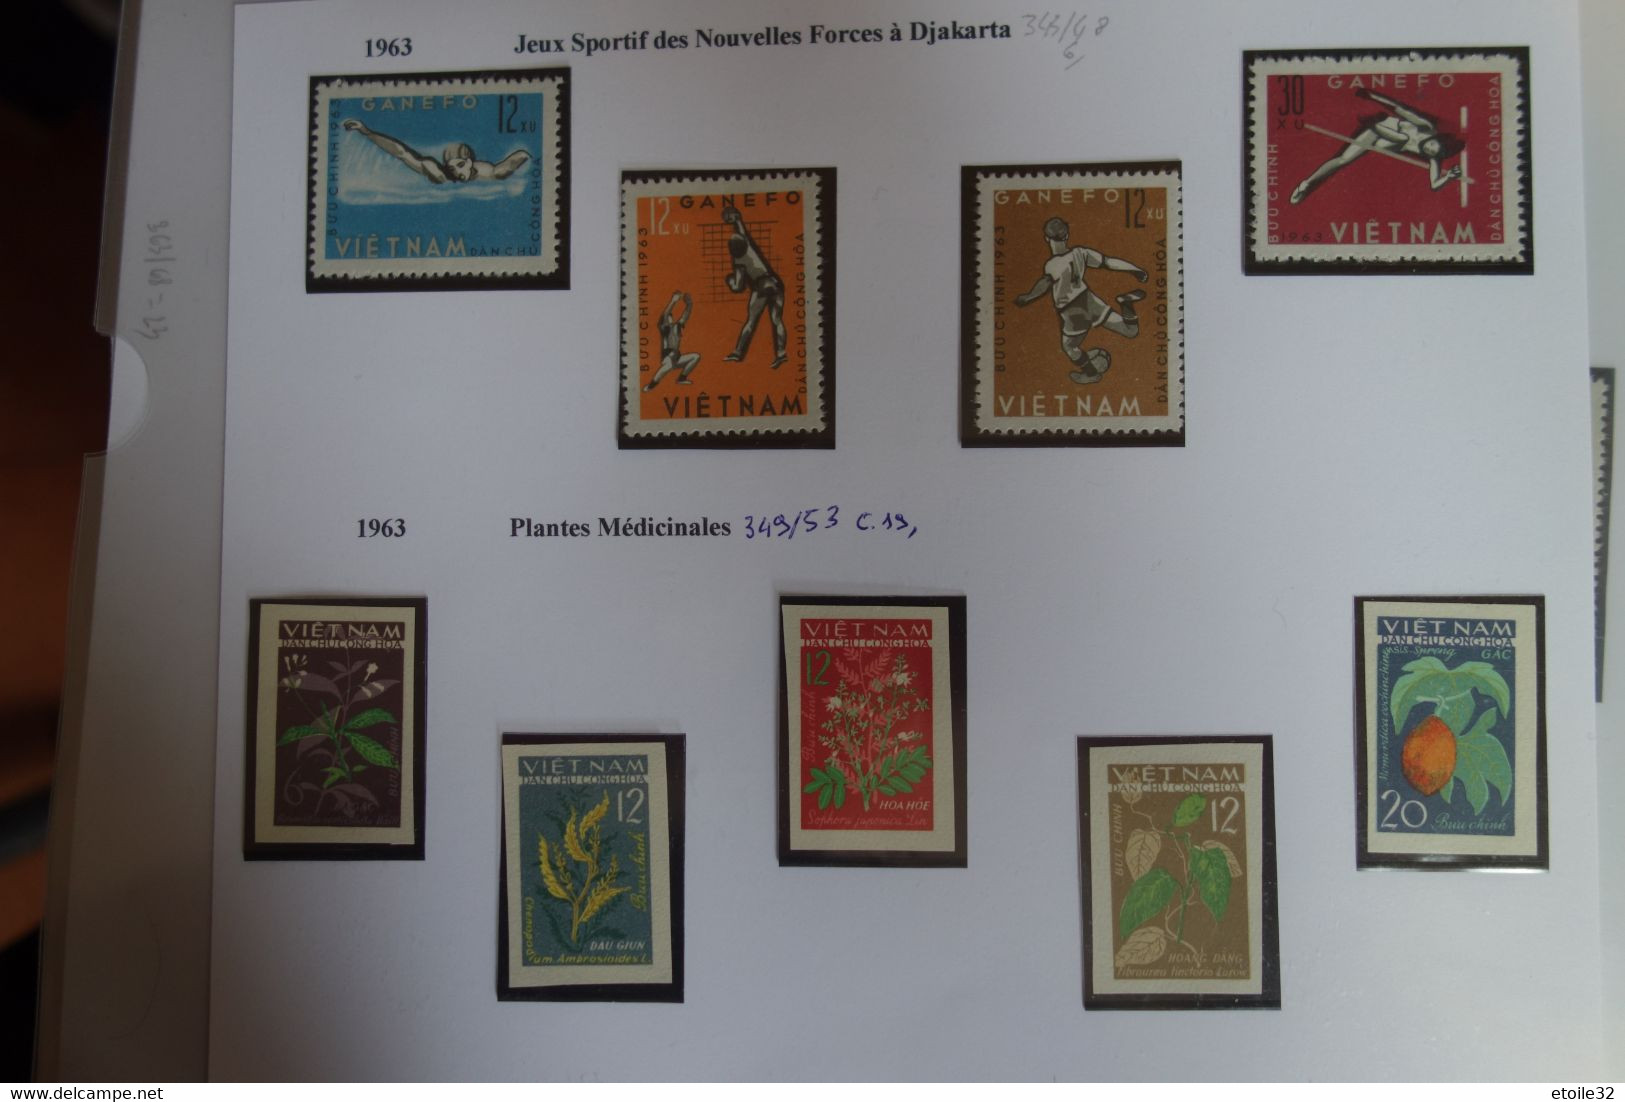 VIÊT-NAM DU NORD :collection de 1955 a 1975 neuf et oblitéré 98 SCAN..